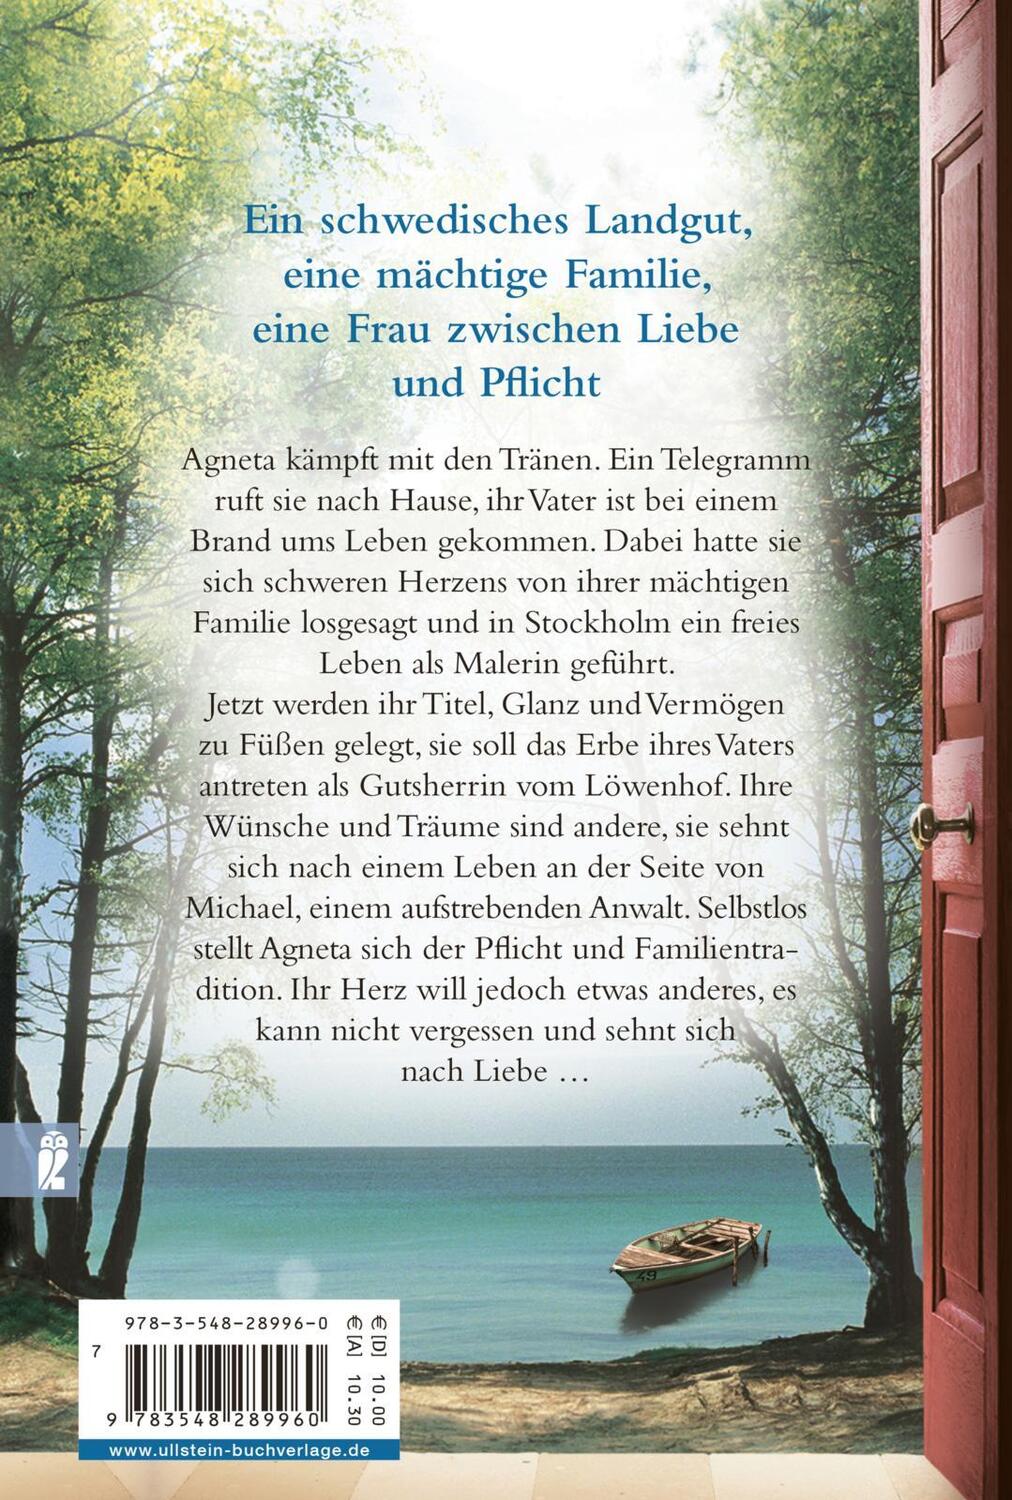 Rückseite: 9783548289960 | Die Frauen vom Löwenhof - Agnetas Erbe | Roman | Corina Bomann | Buch